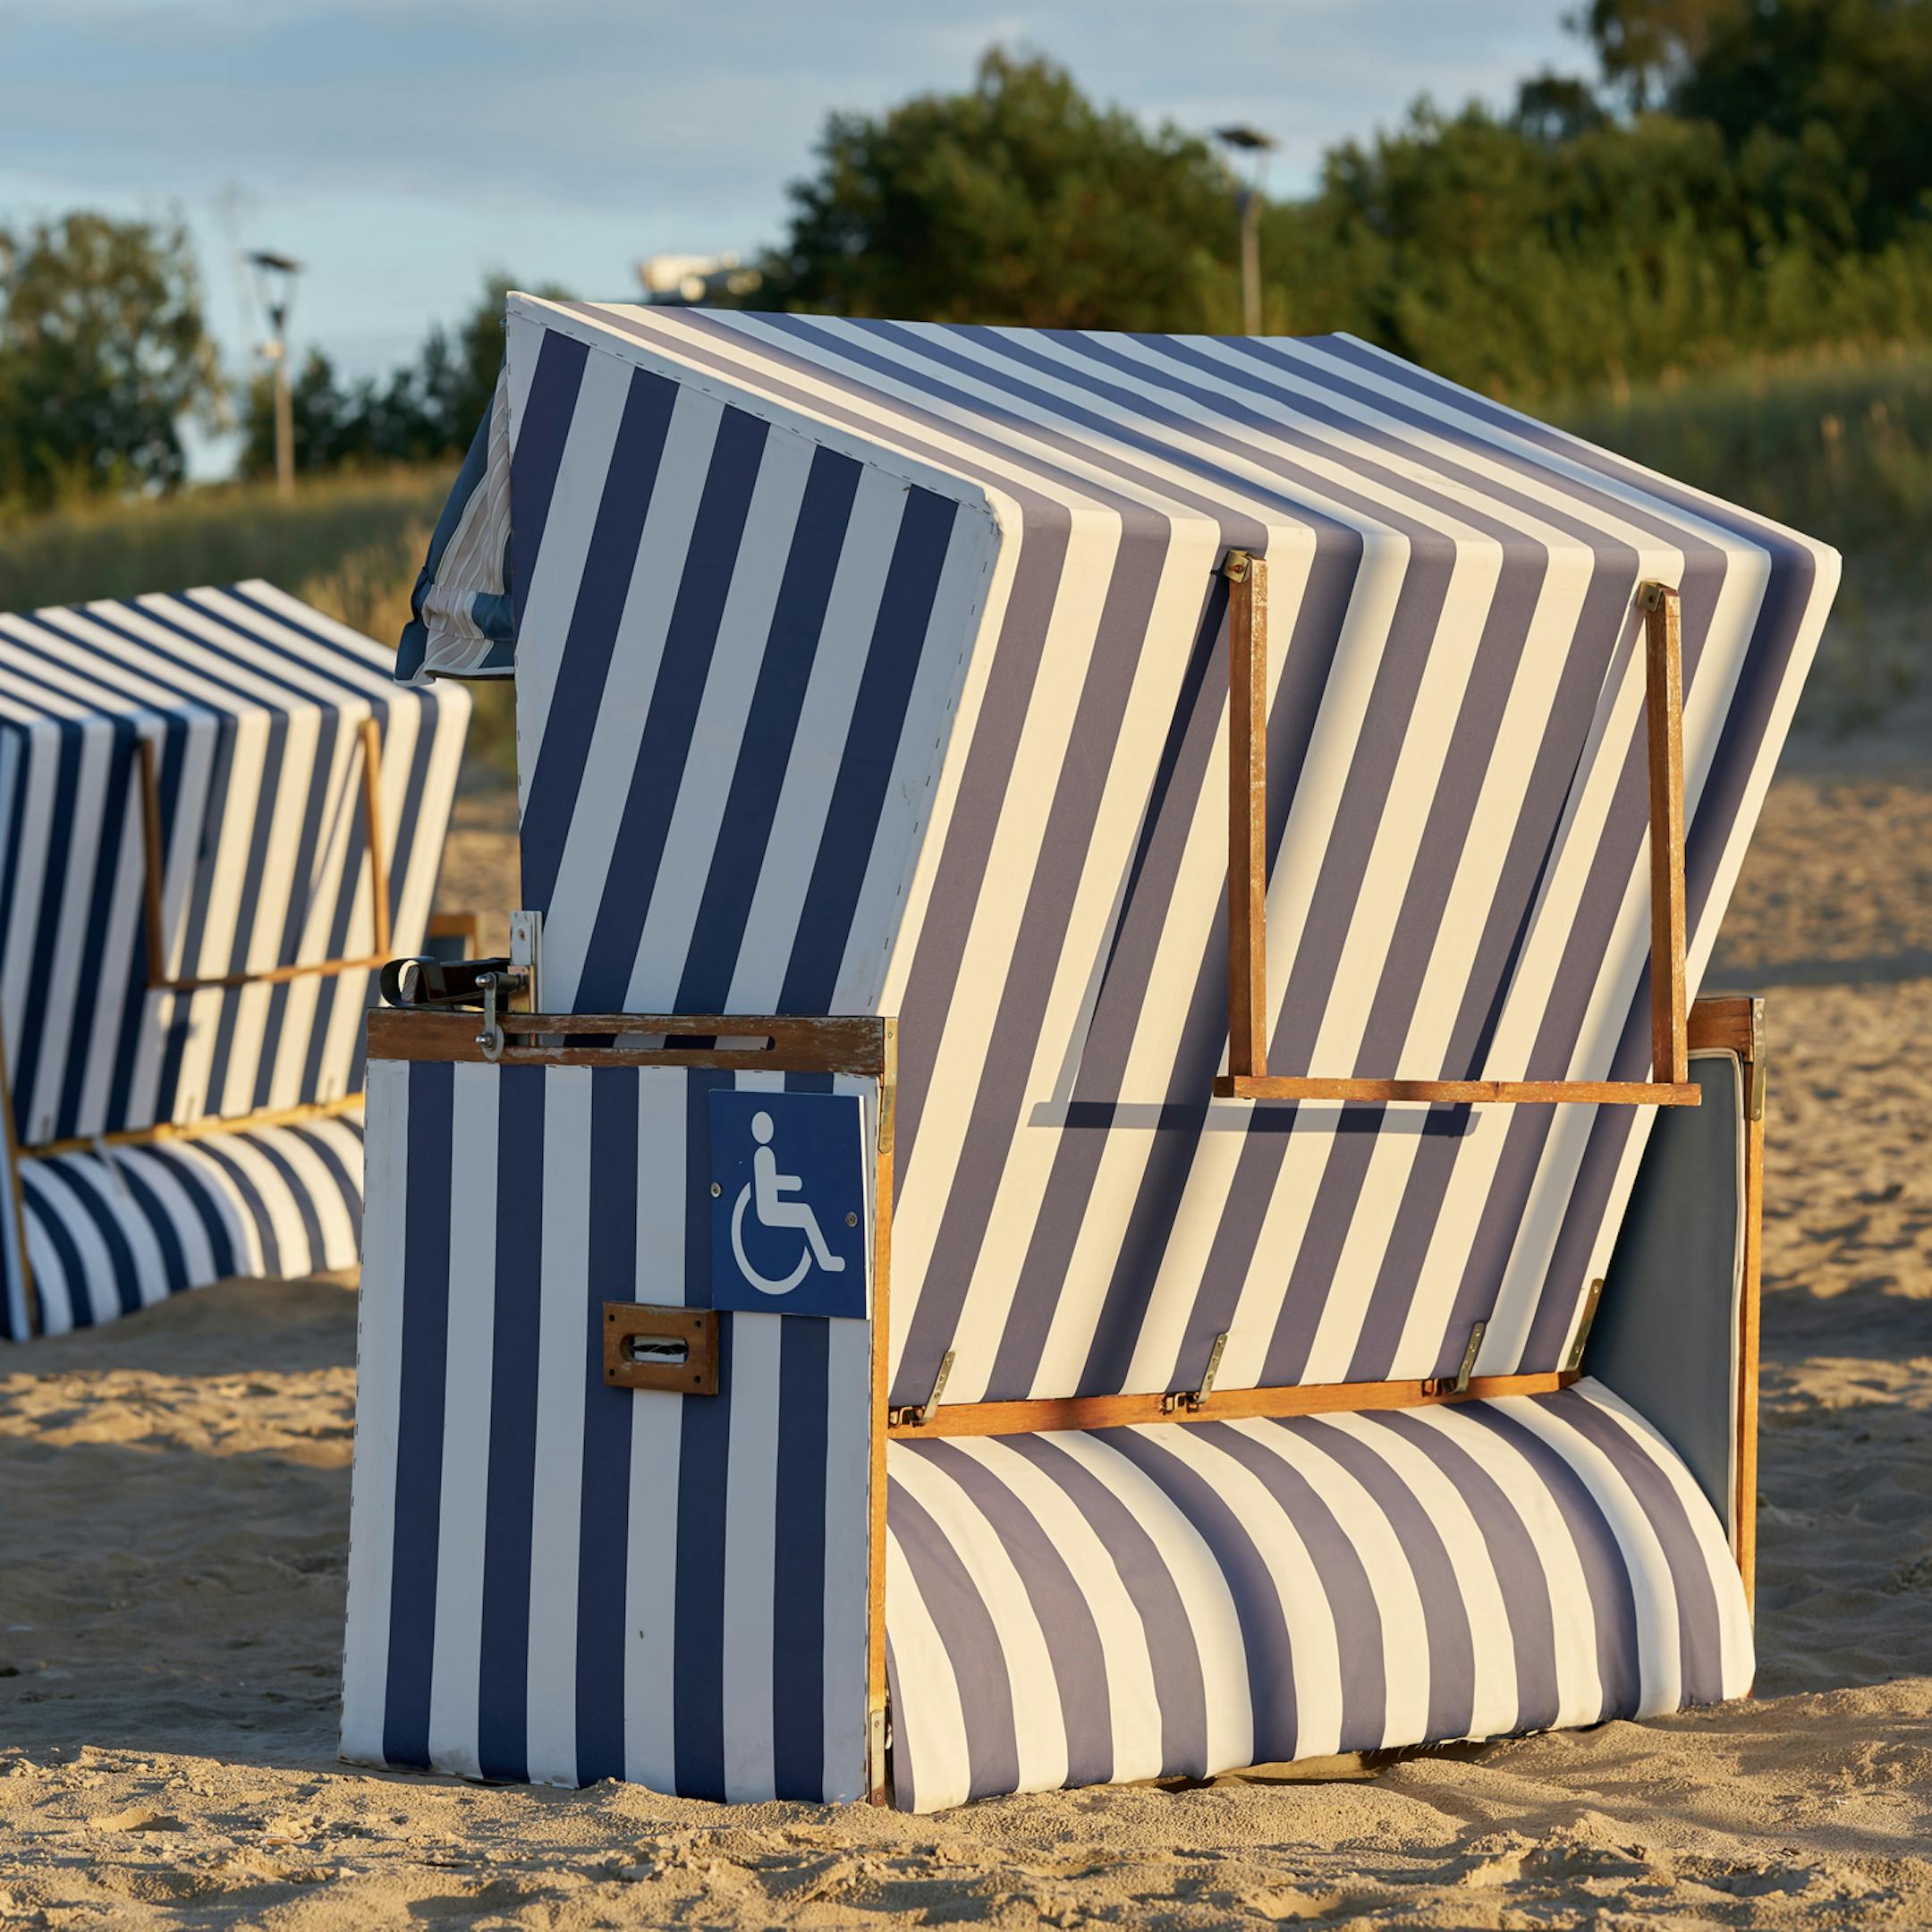 Cabines de plage sur la plage de Swinoujscie sur la mer Baltique en Pologne